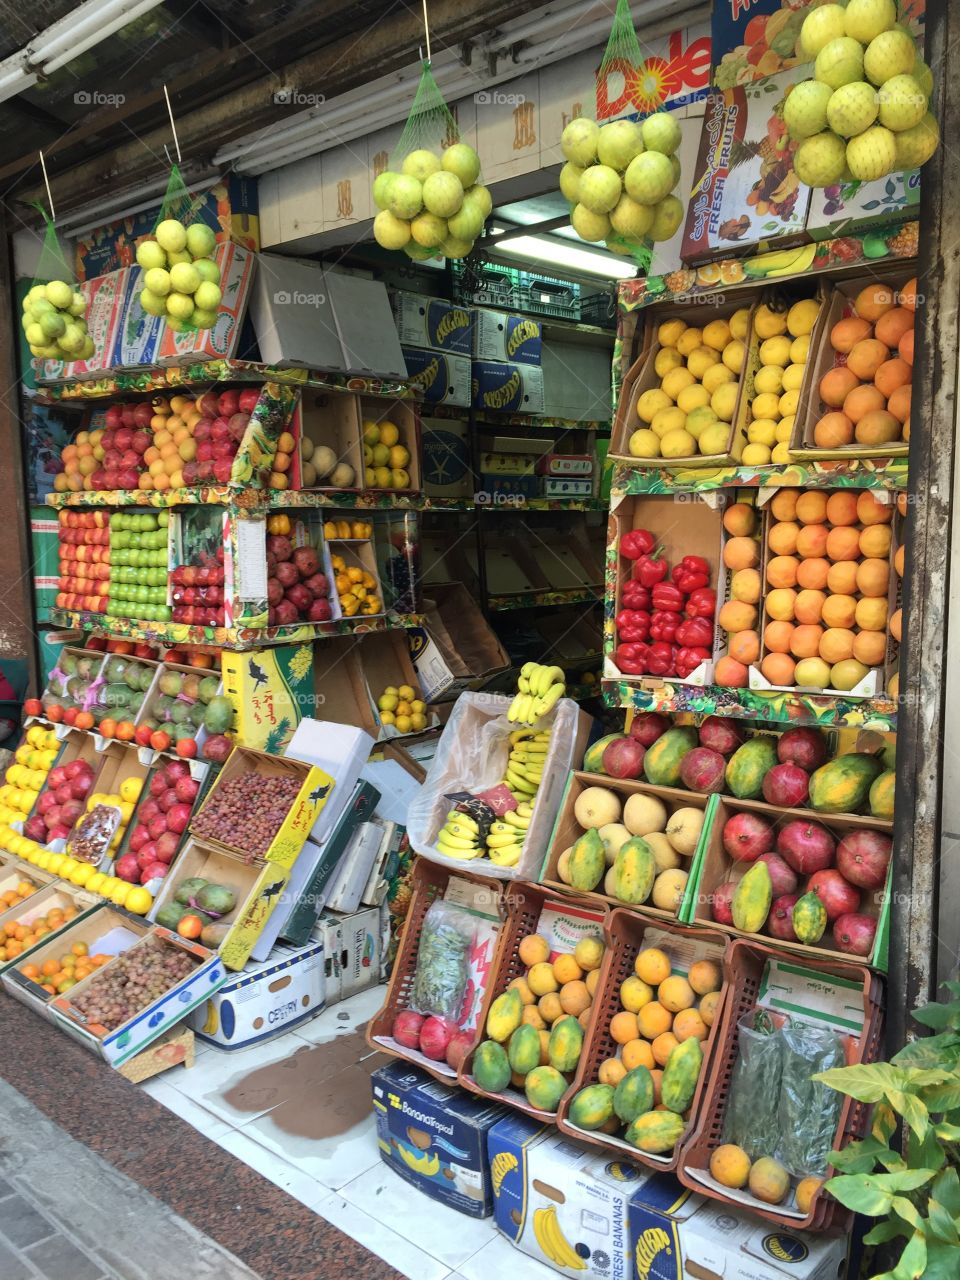 Green grocer Egypt zamelak Cairo 